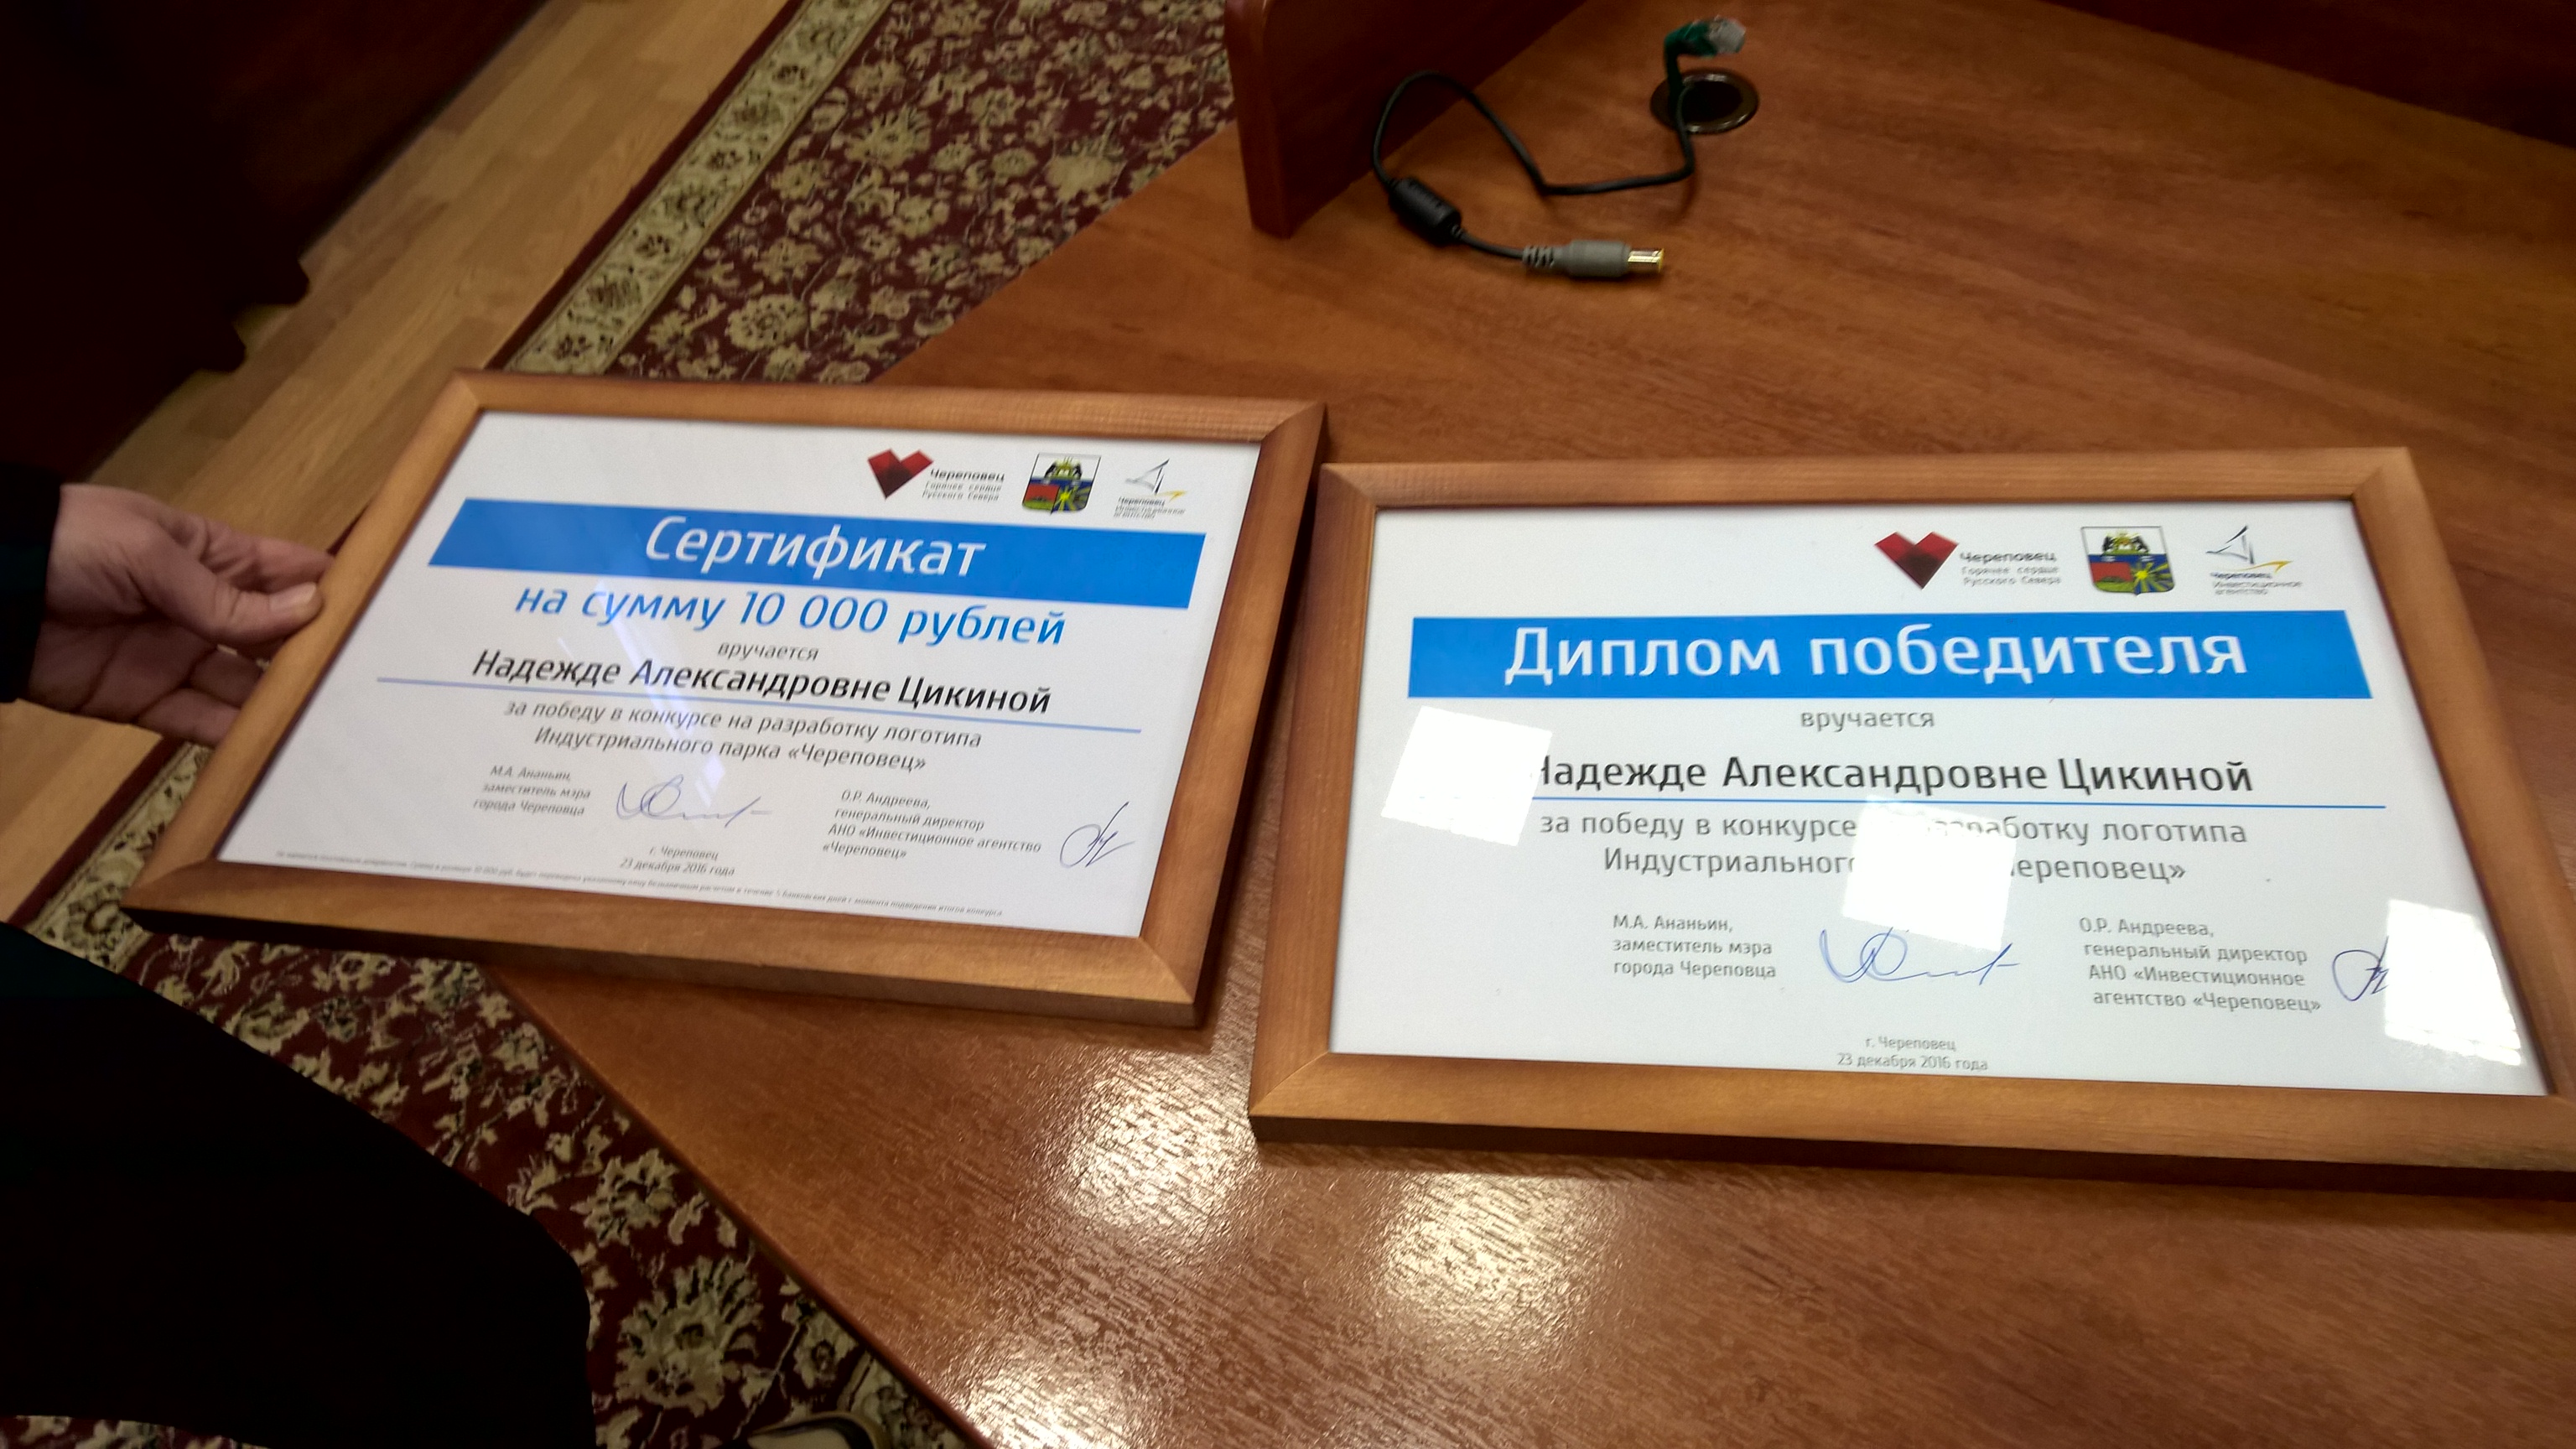 Главный приз конкурса&nbsp;&mdash;&nbsp;сертификат на&nbsp;10&nbsp;000 рублей